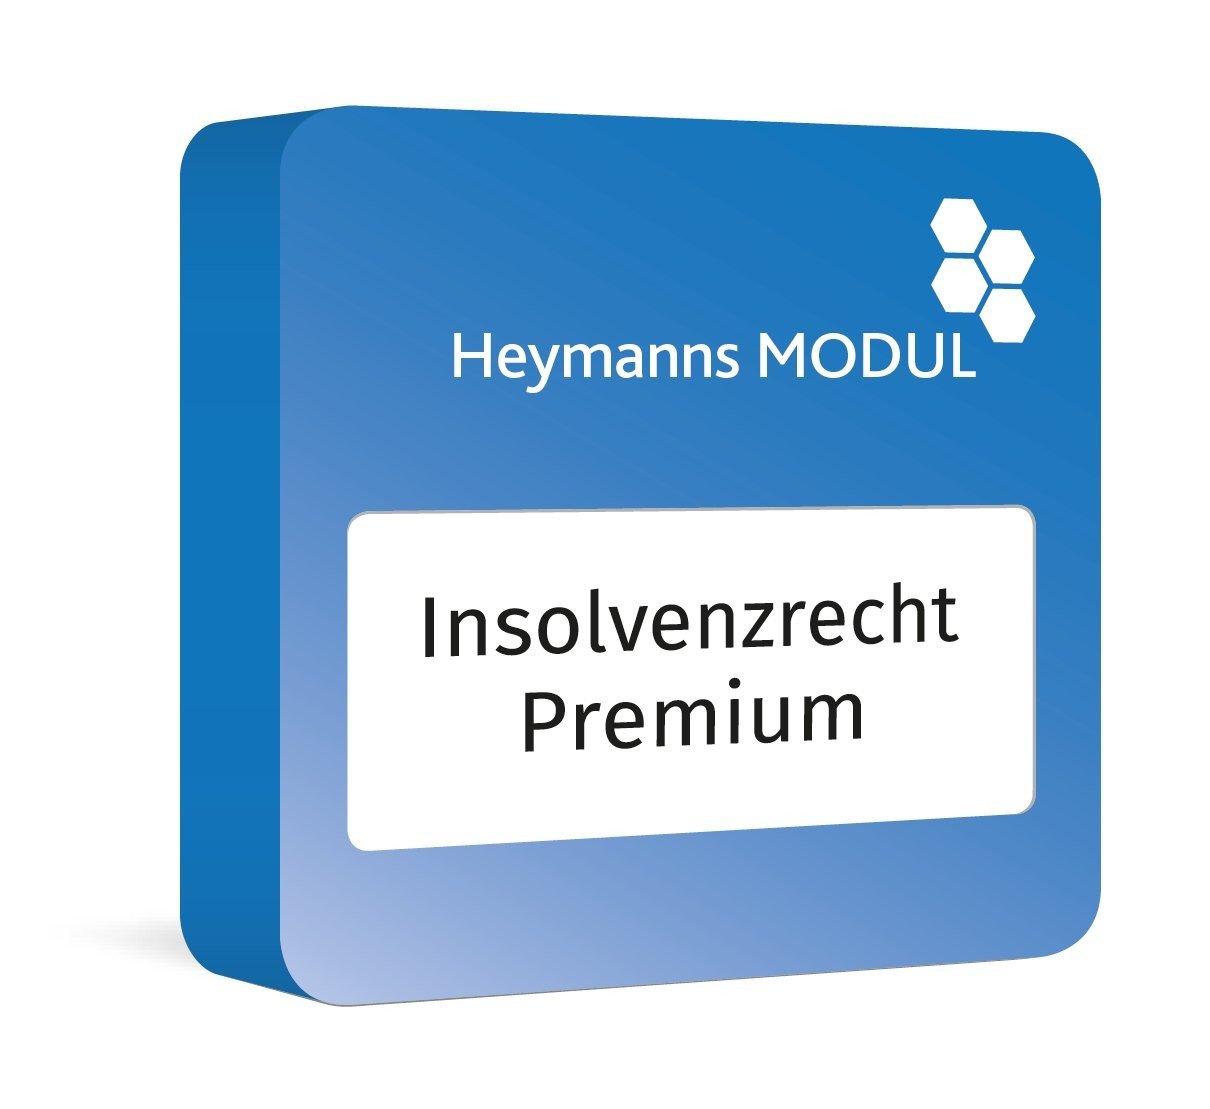 InsolvenzrechtPremium-Heymanns-Modul-Perspektive1-4c